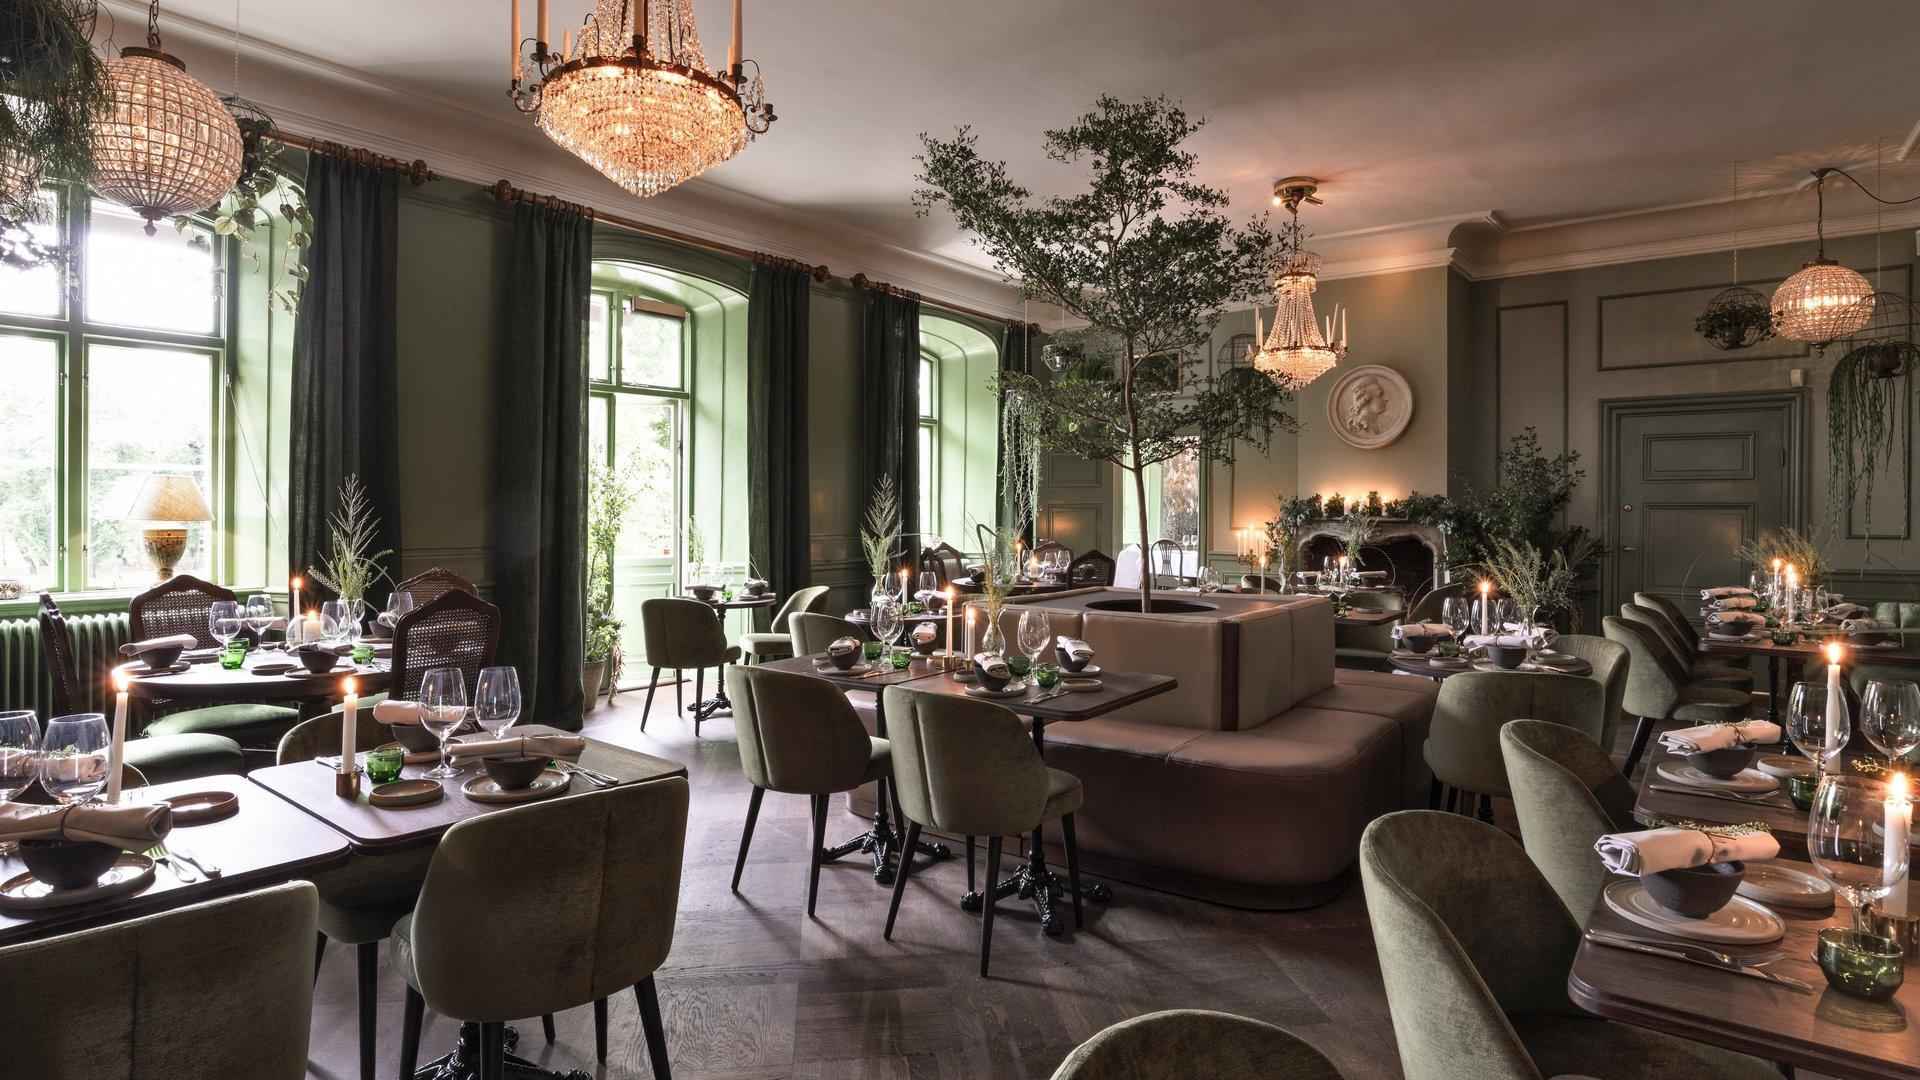 Een grote eetkamer ingericht met houten tafels, groene stoelen en groene muren. Aan het plafond hangen kroonluchters.